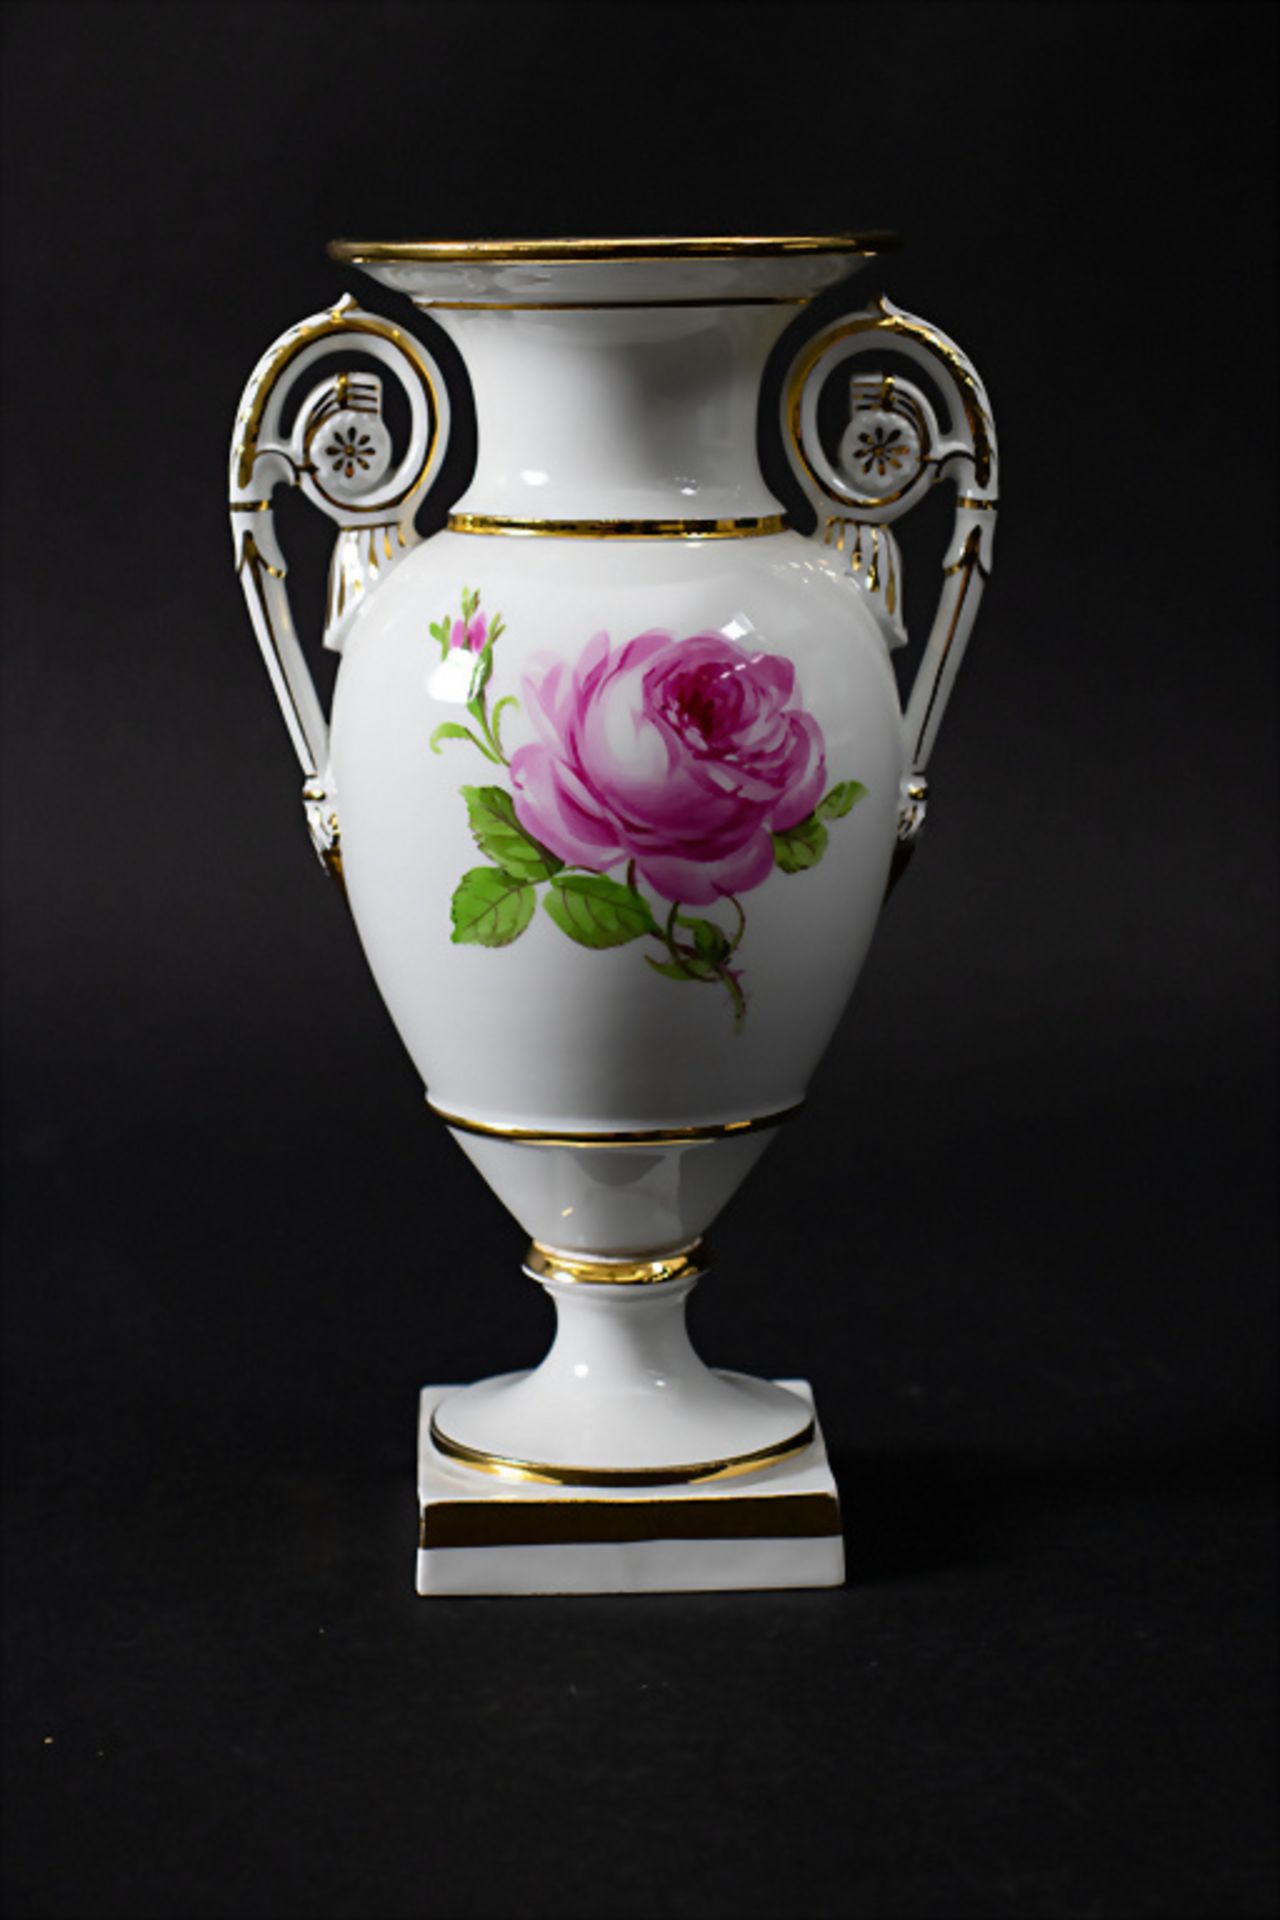 Balusterförmige Vase 'Rote Rose' / A baluster-shaped vase 'Red rose', Meissen, 19./20. Jh. - Image 3 of 7